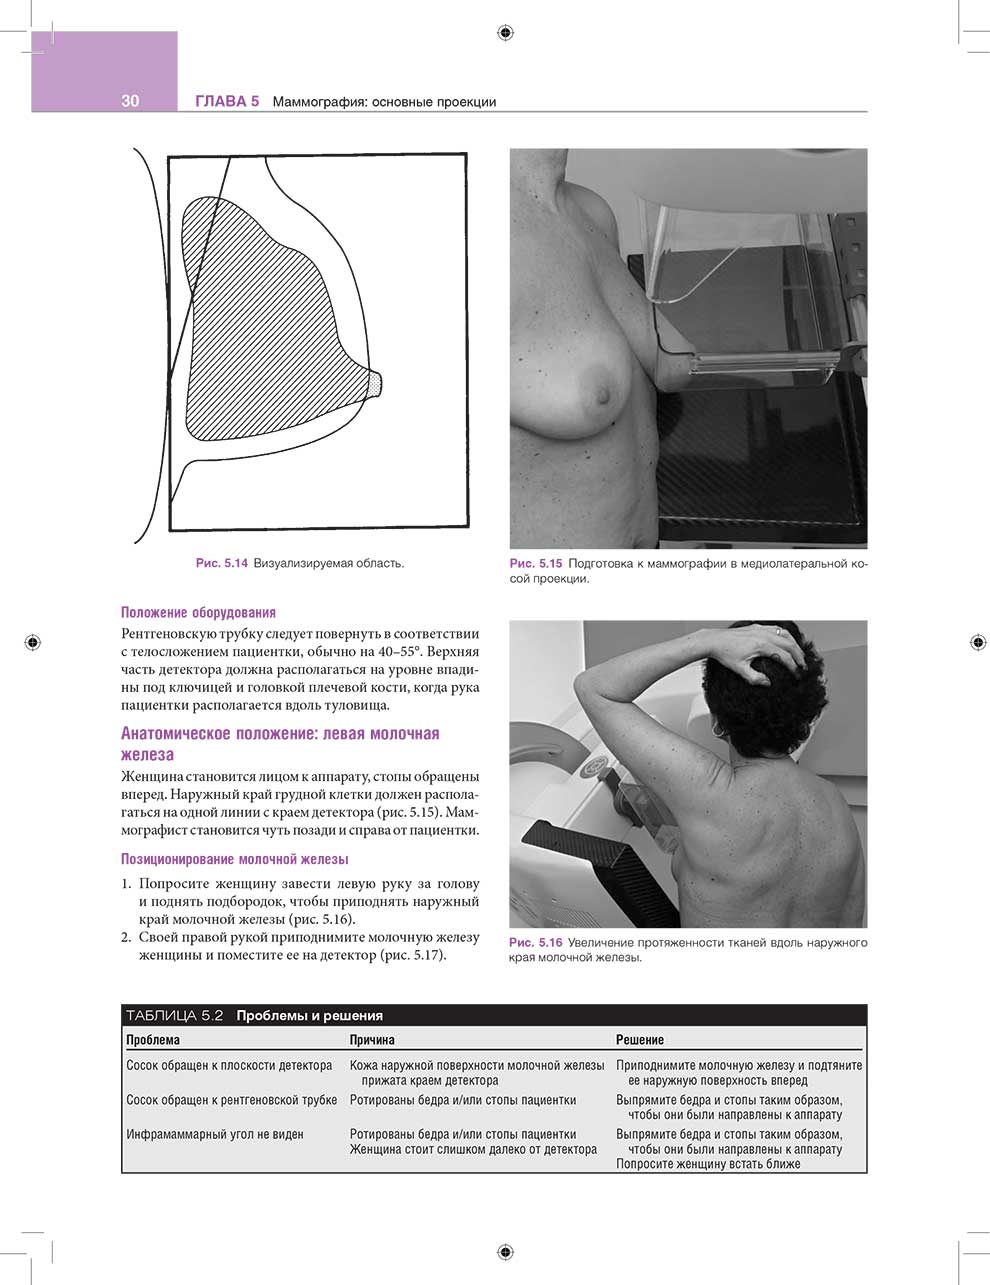 Рис. 5.16 Увеличение протяженности тканей вдоль наружного края молочной железы.